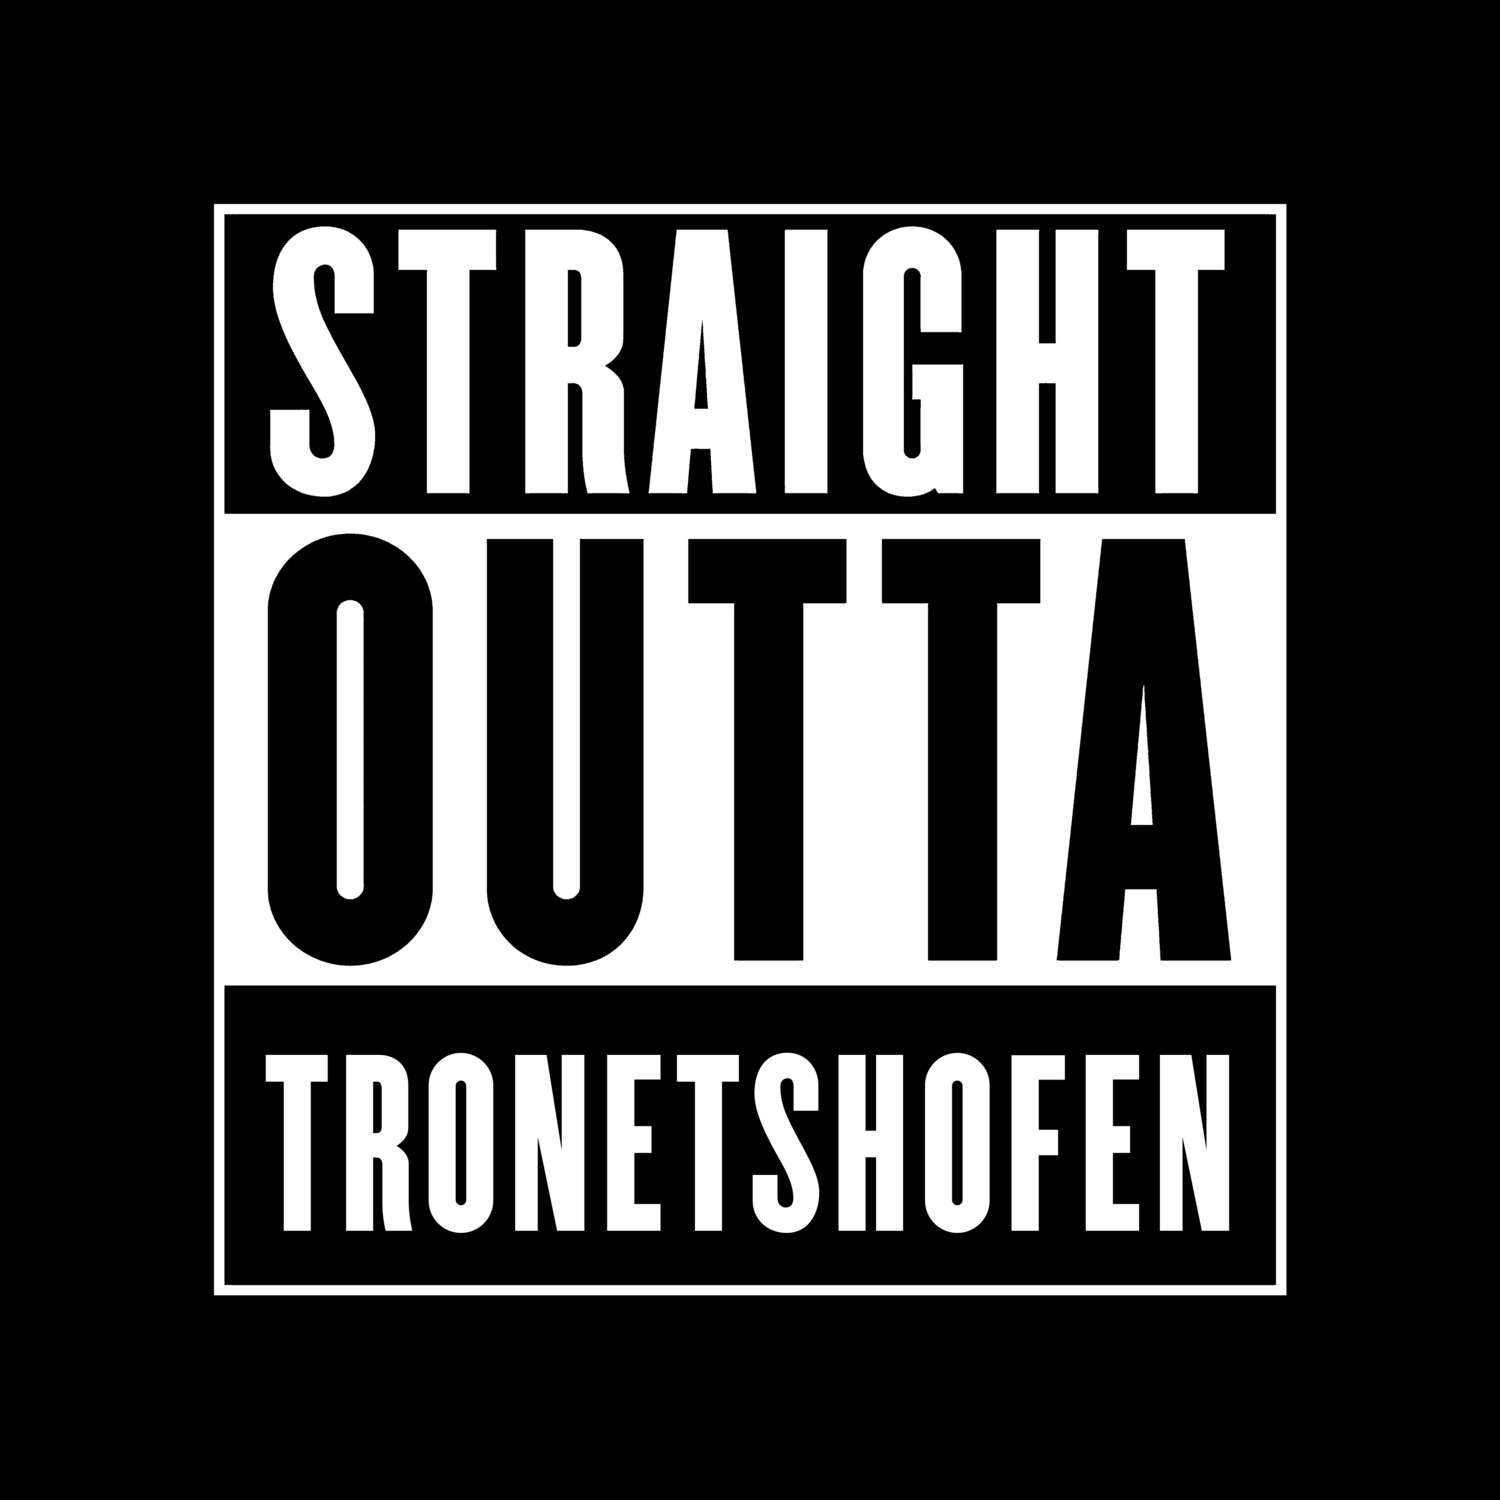 Tronetshofen T-Shirt »Straight Outta«